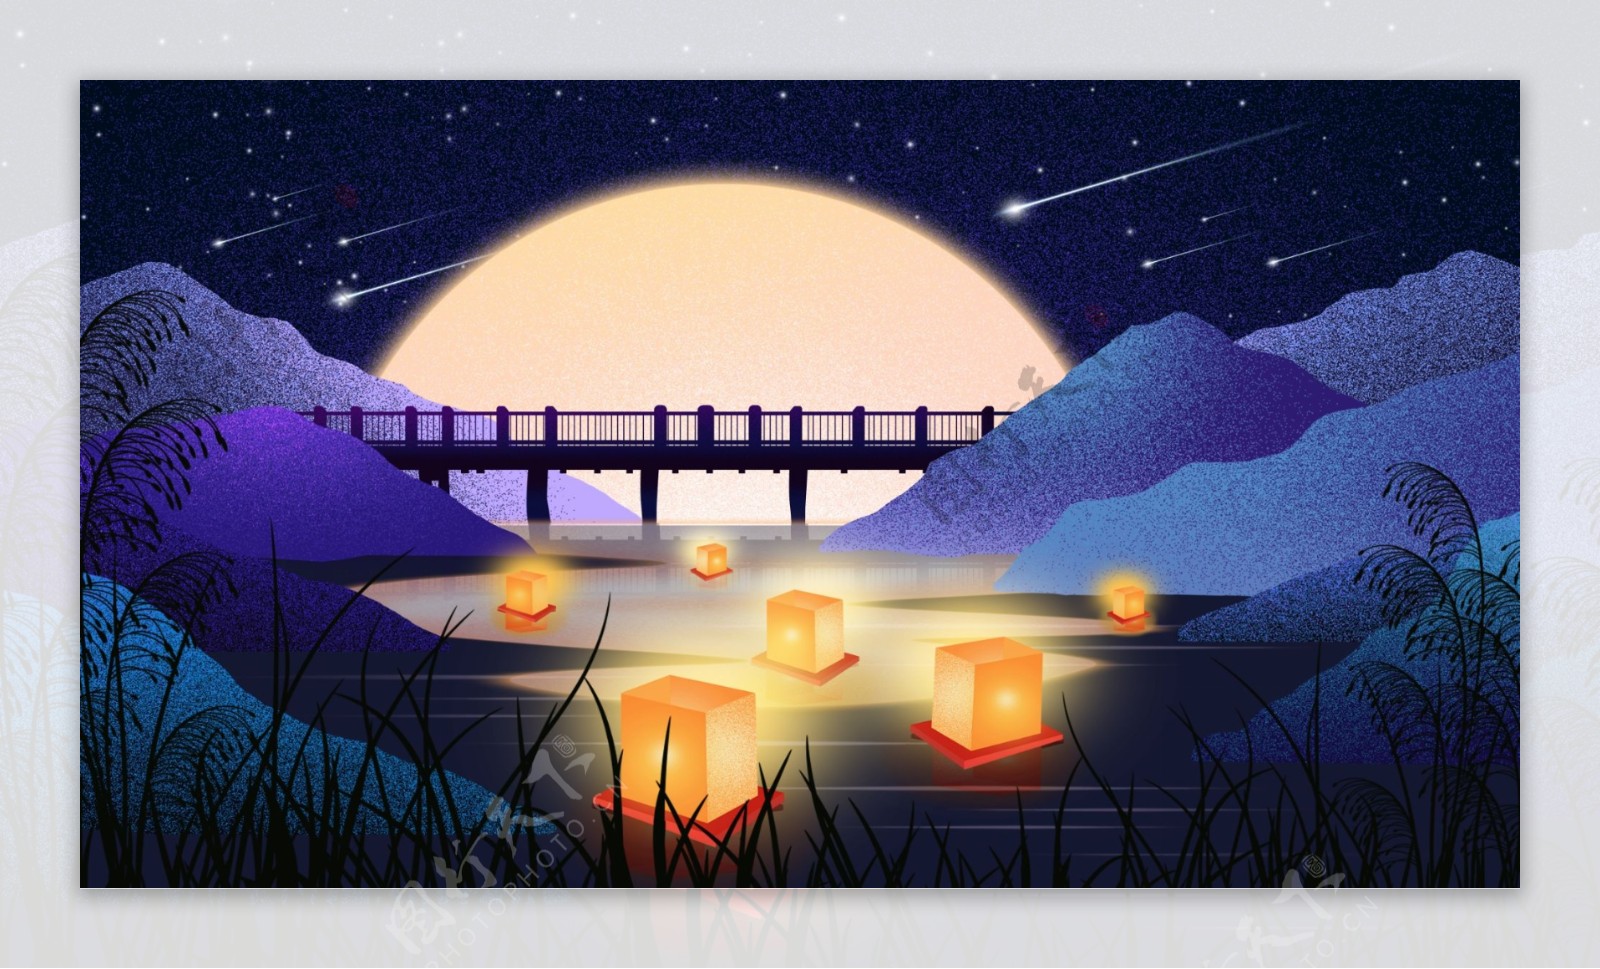 小桥流水许愿灯山峰明月卡通背景